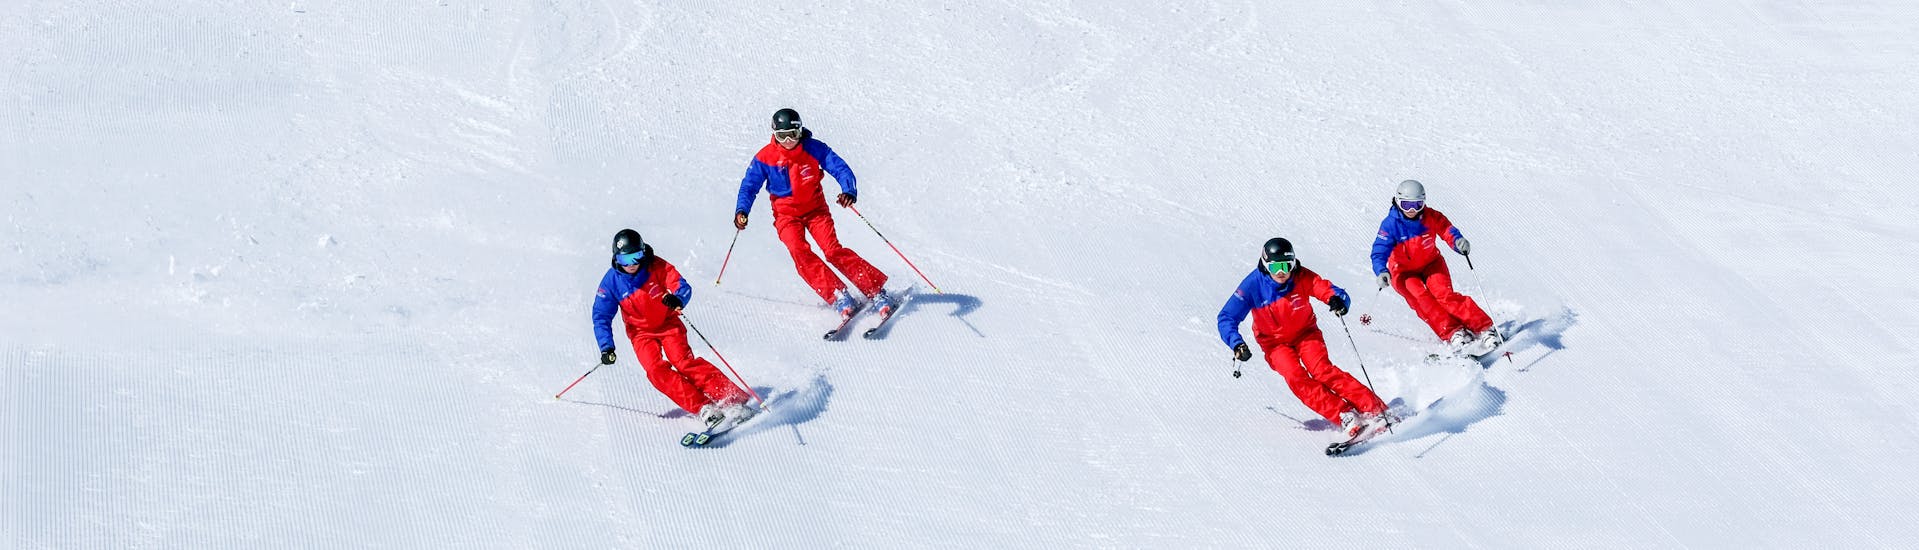 Les adolescents écoutent le moniteur de ski dans le cours de ski pour adolescents (14-17 ans) - skieurs expérimentés